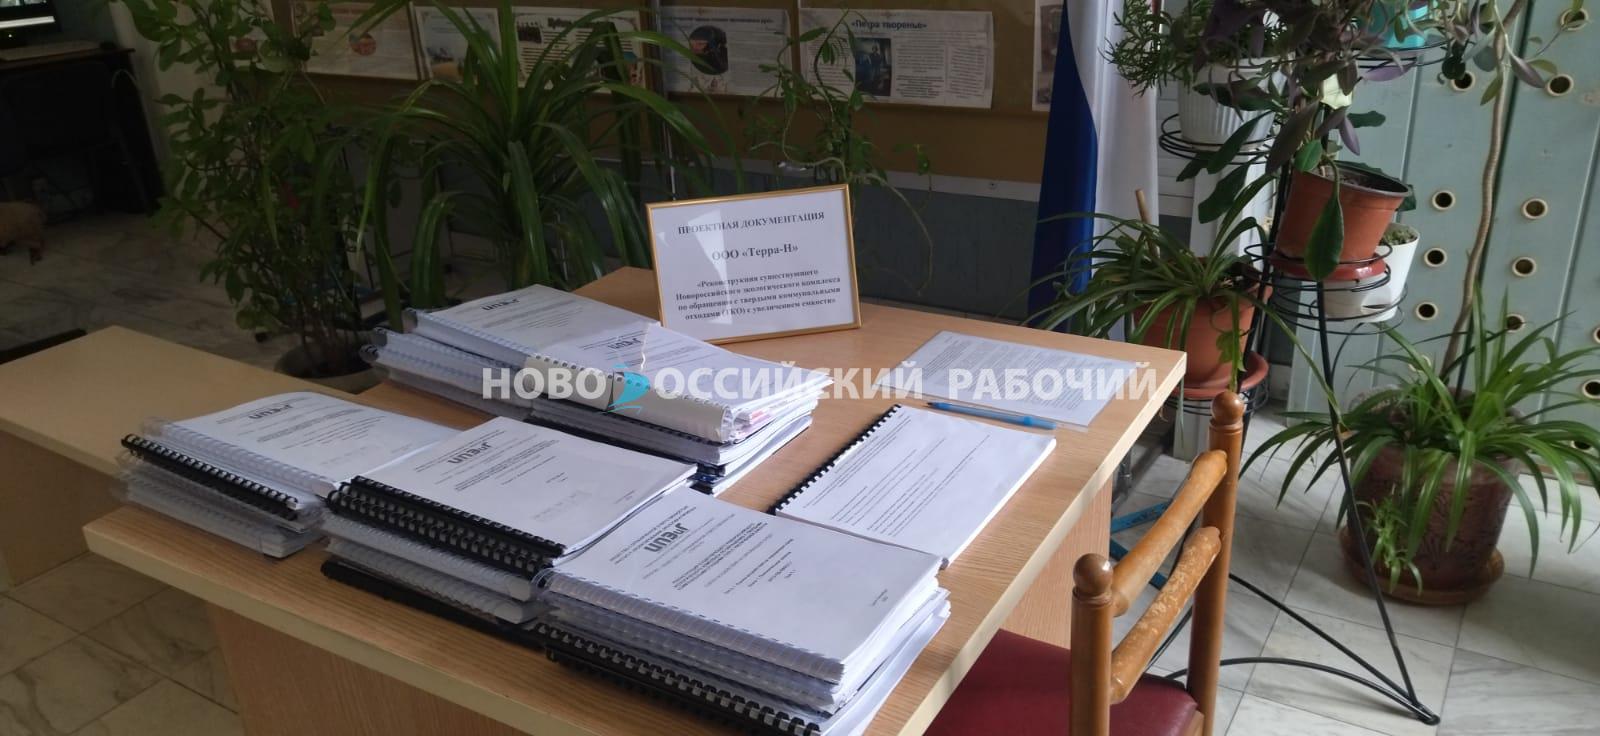 Документы для общественных слушаний по мусорному полигону в Новороссийске повышенным спросом пока не пользуются